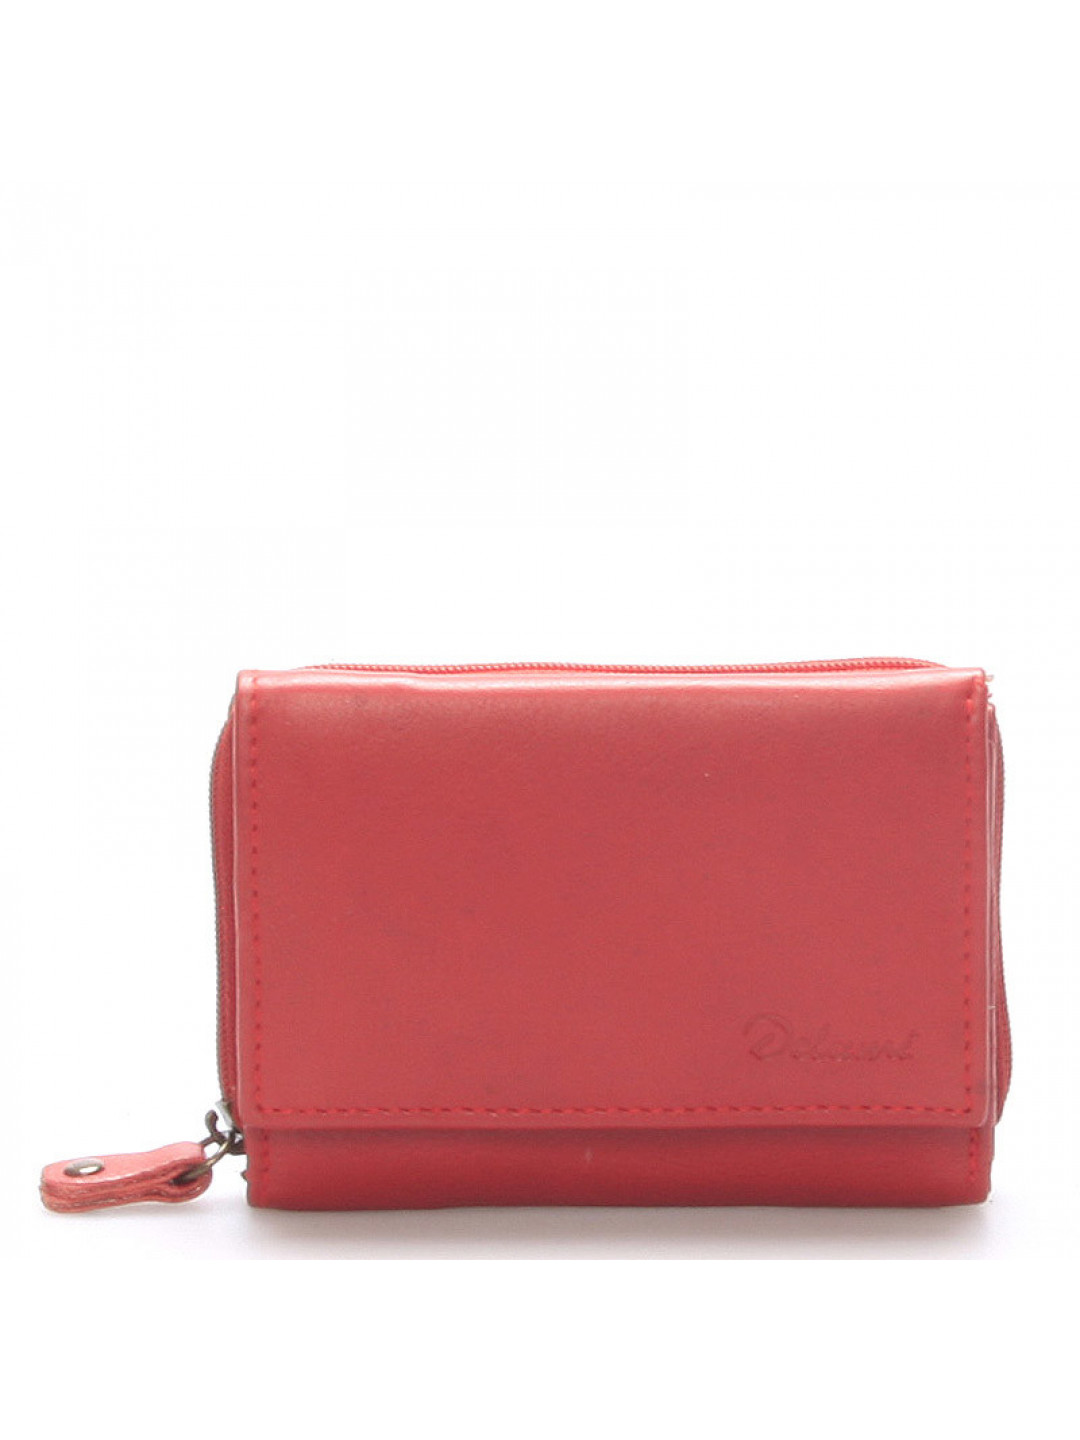 Kožená peněženka Delami Roxy červená